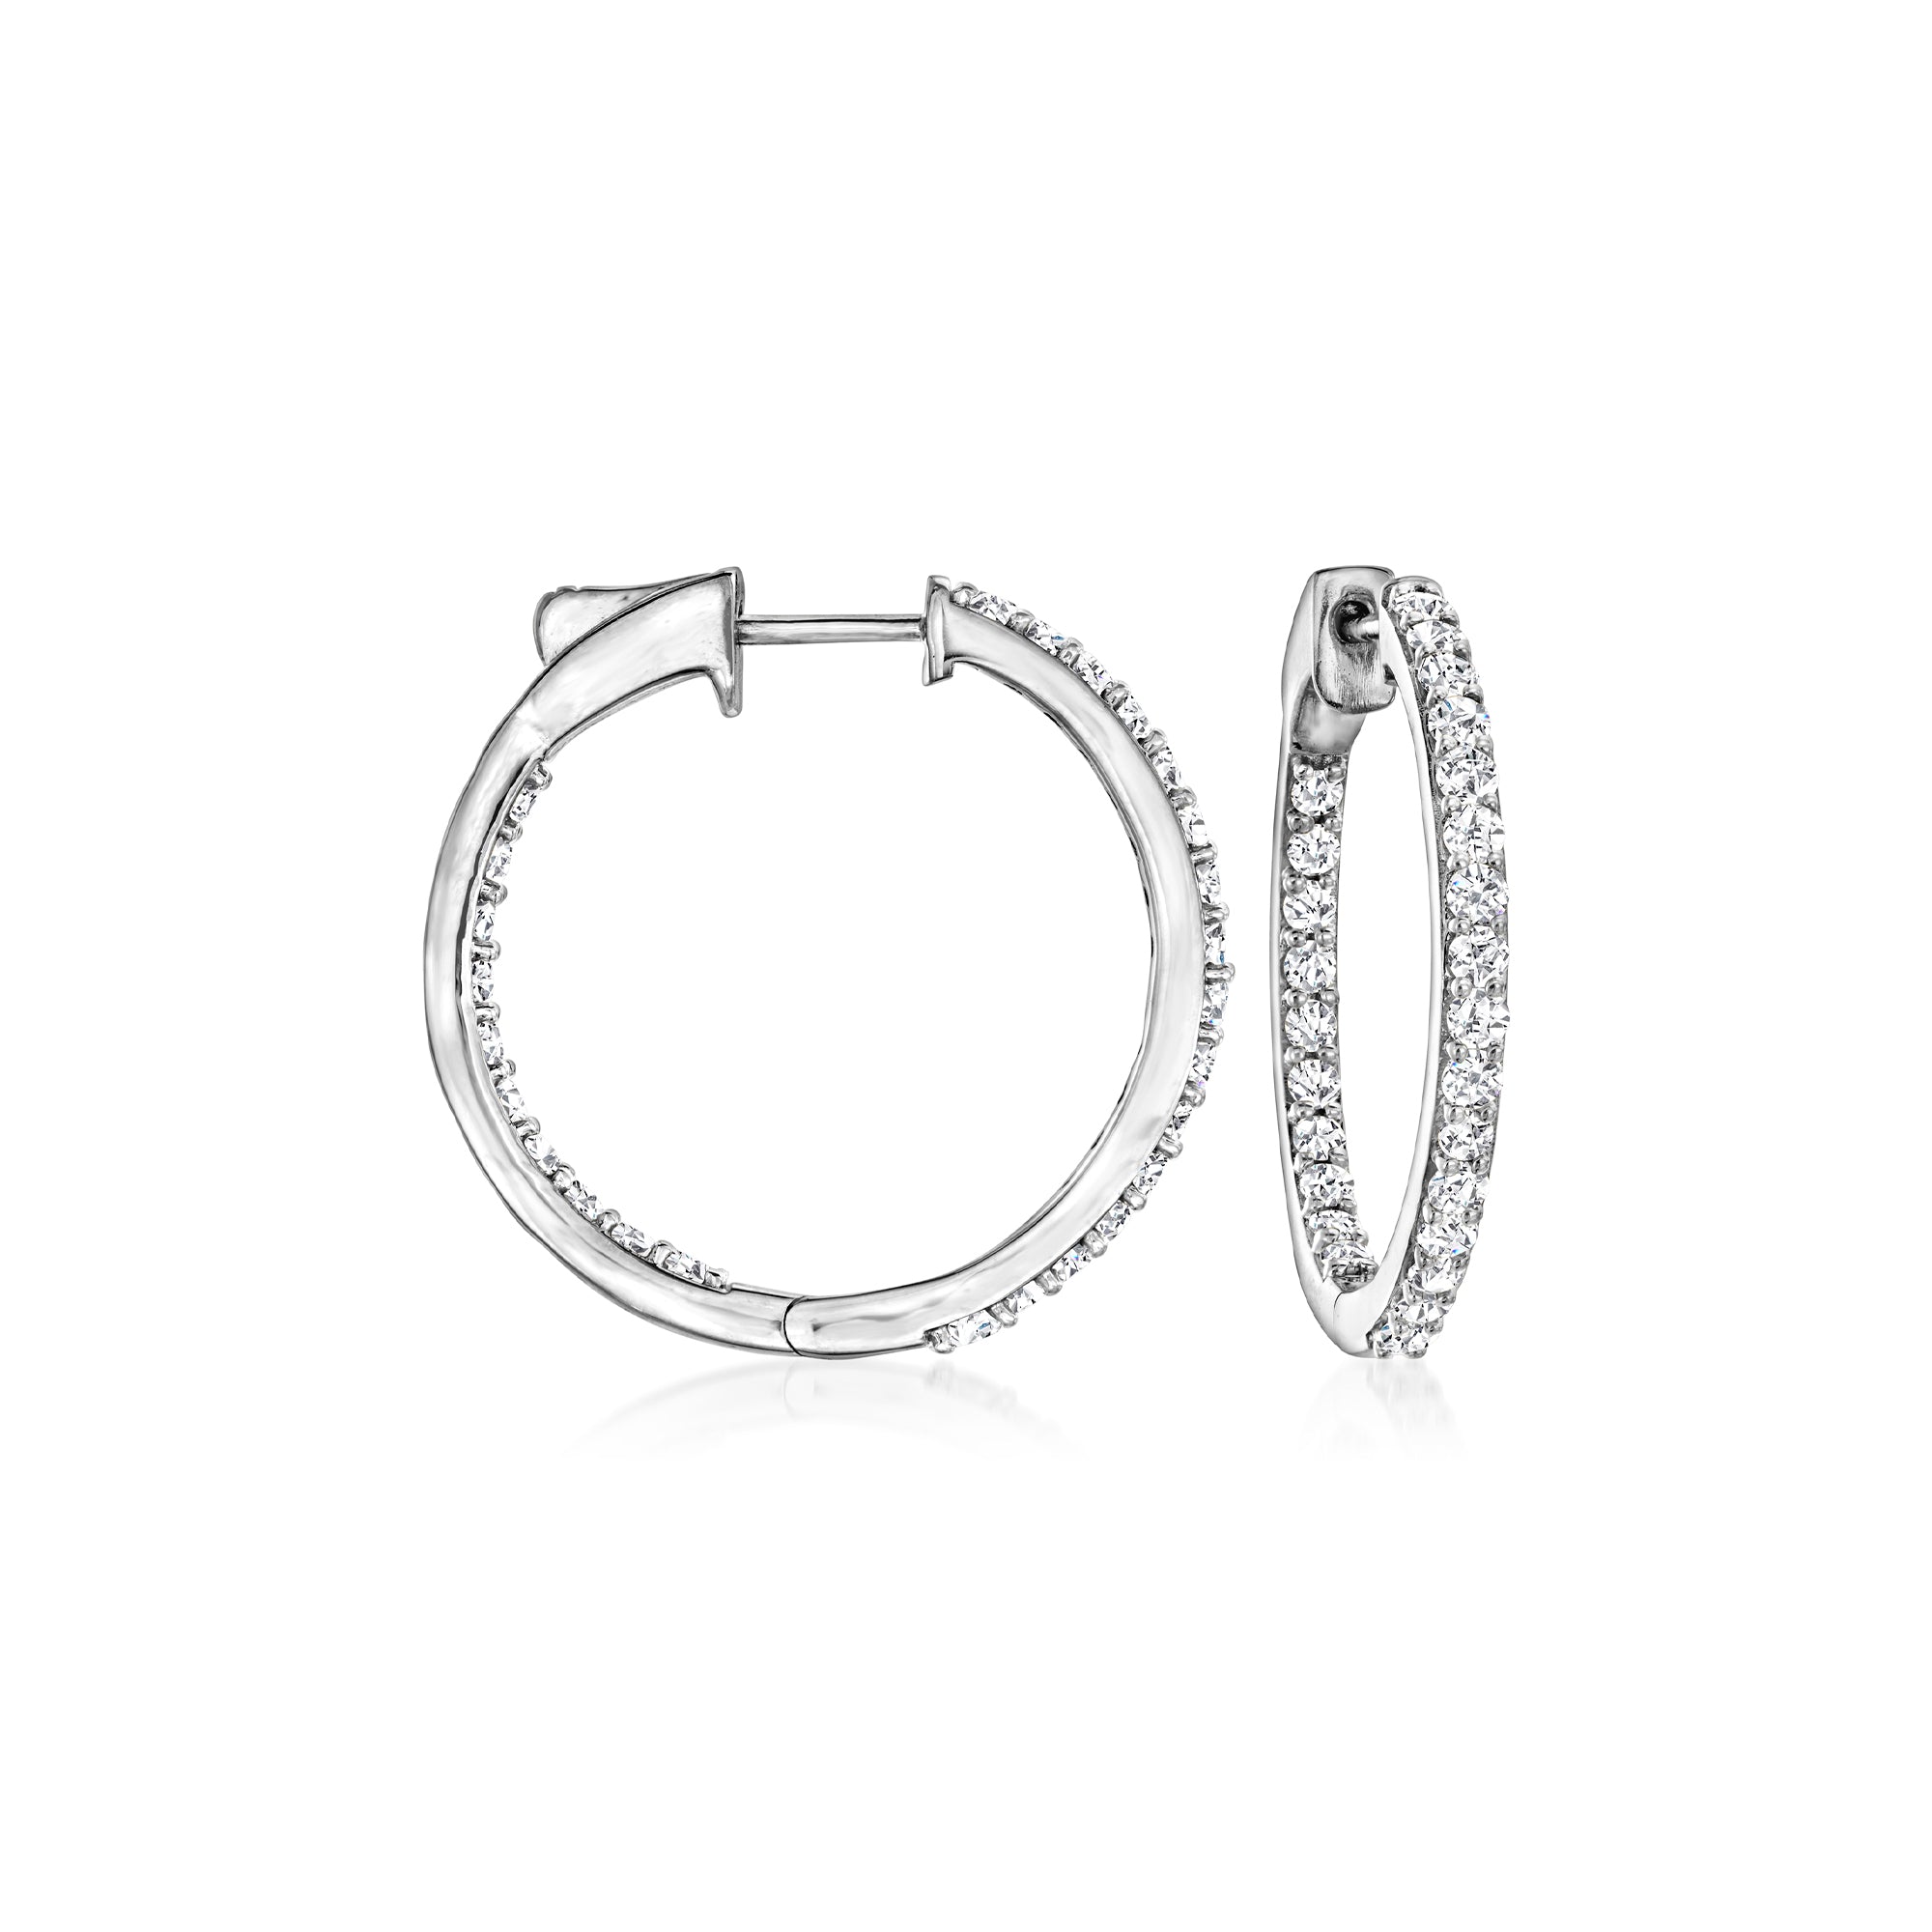 Ross-simons Diamond Inside-outside Hoop Earrings In Sterling Silver In Metallic